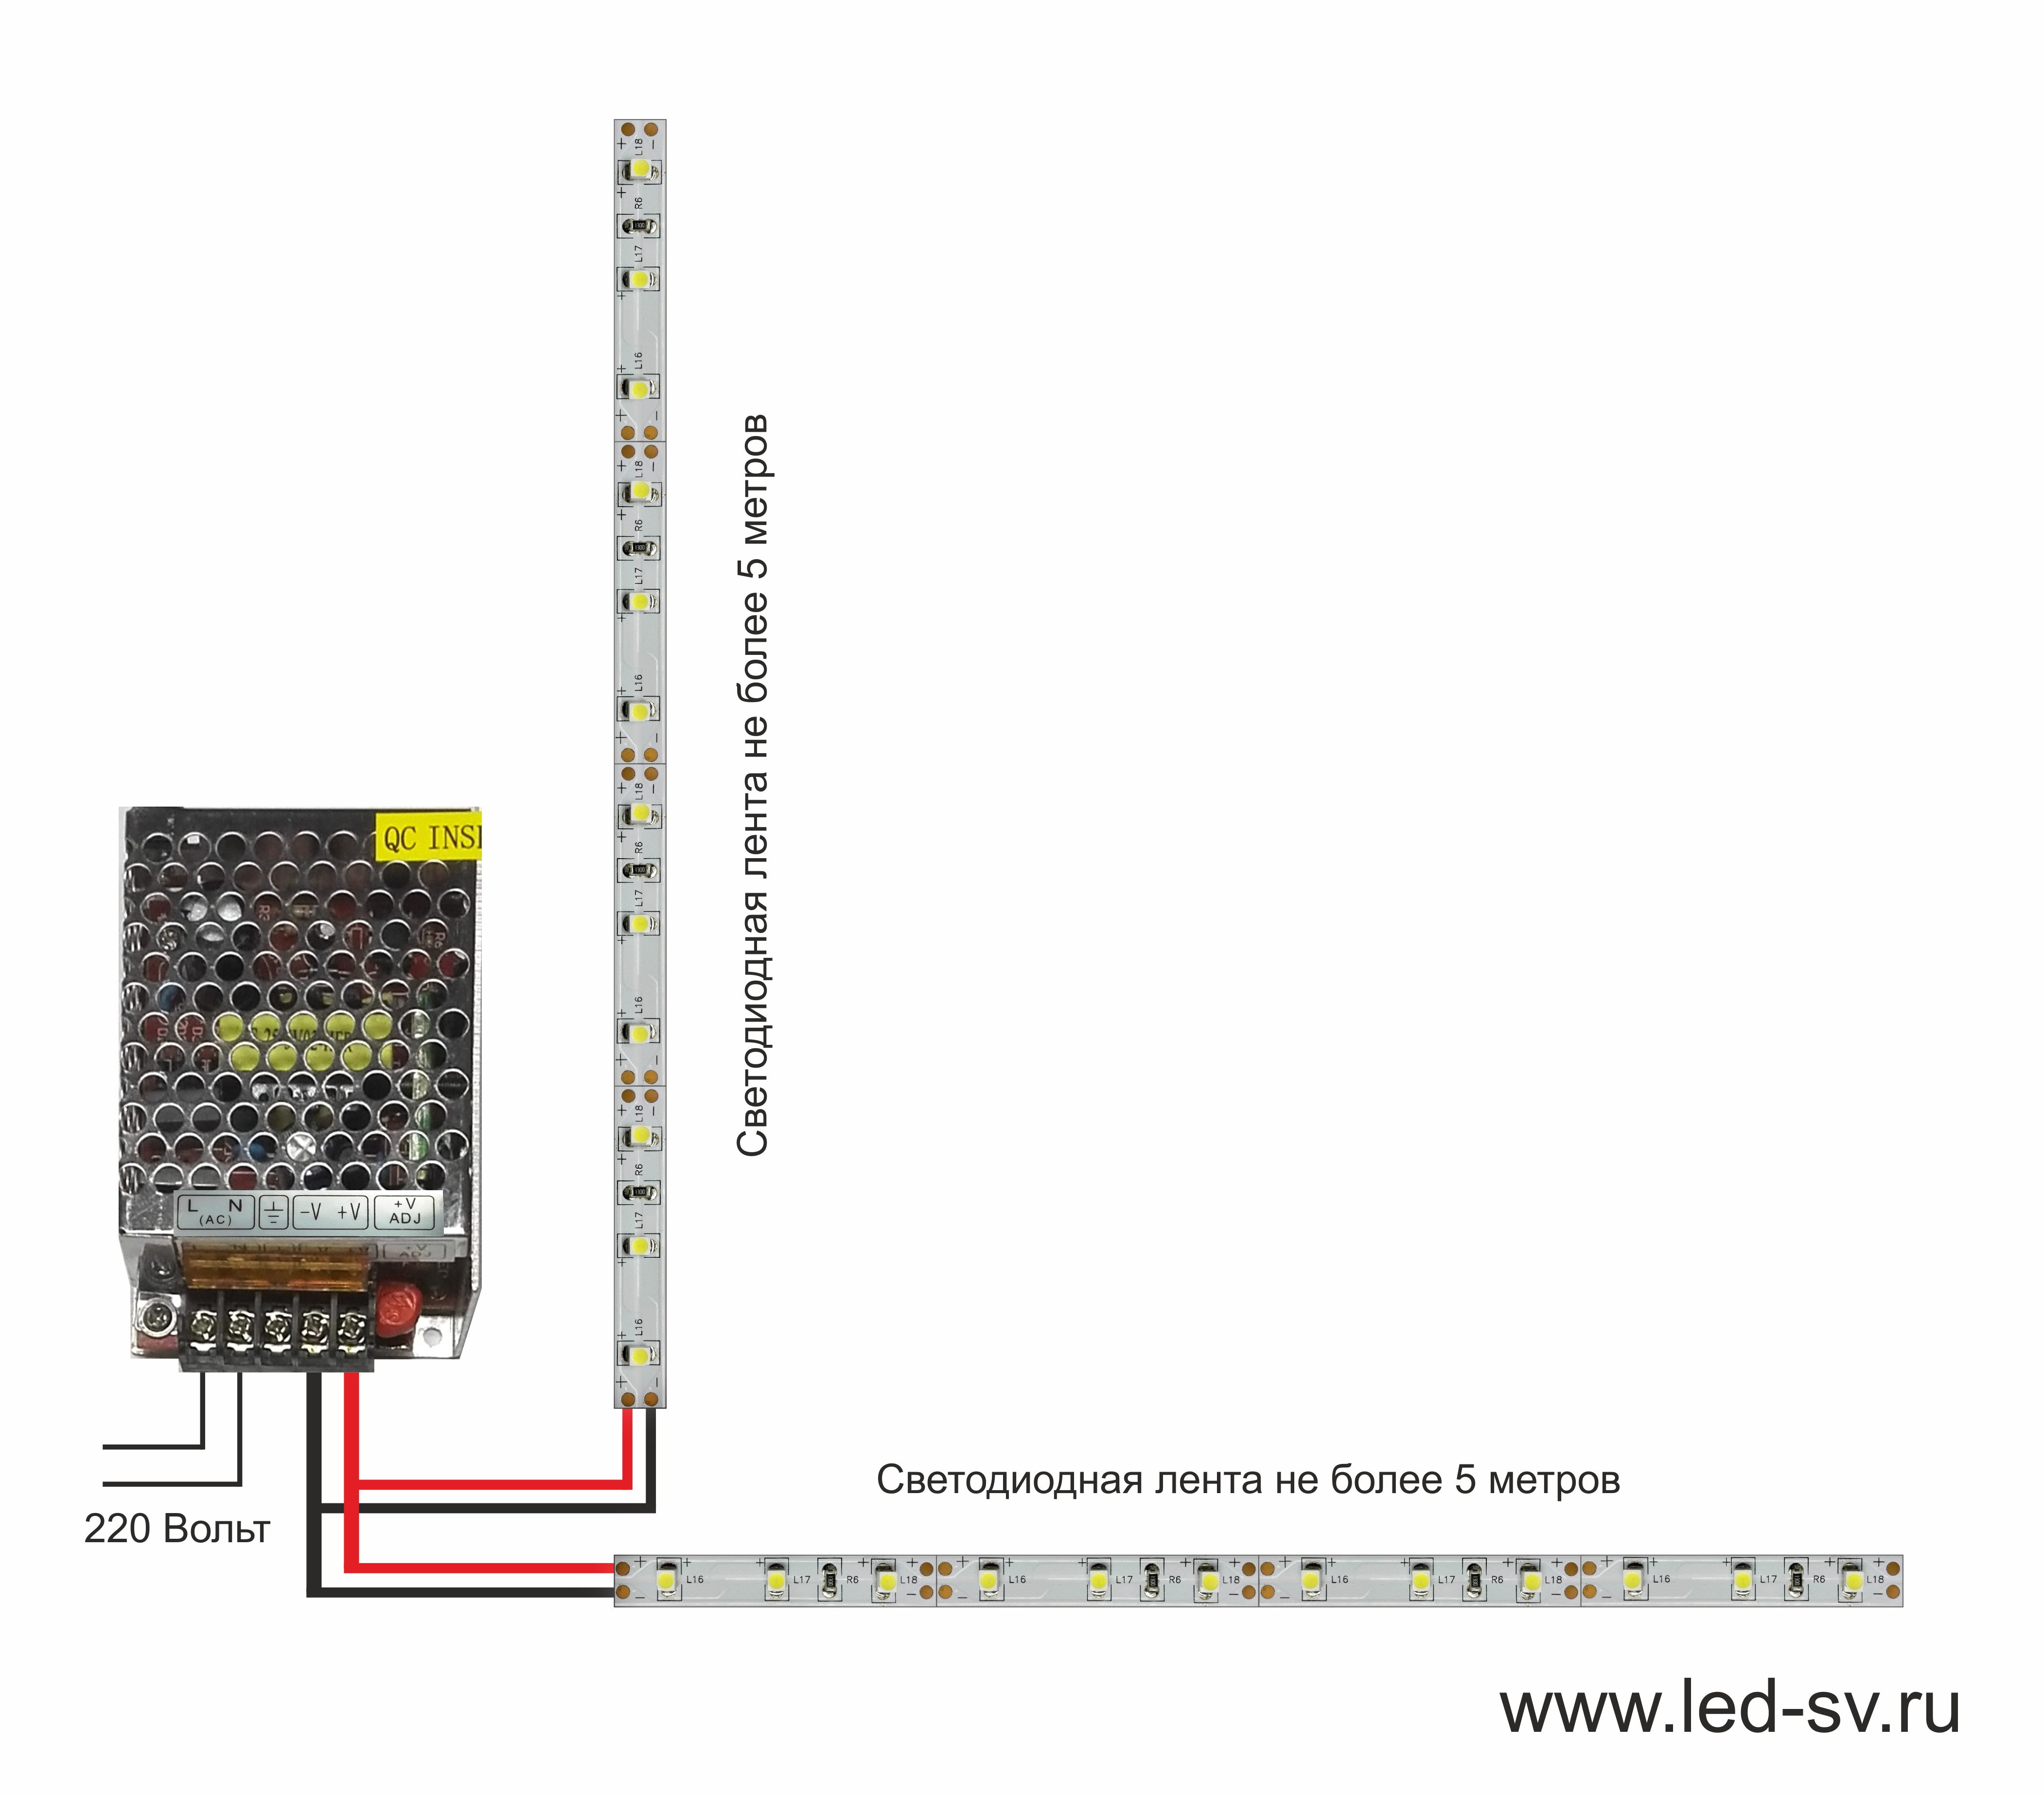 Светодиодная лента - как правильно установить и подключить